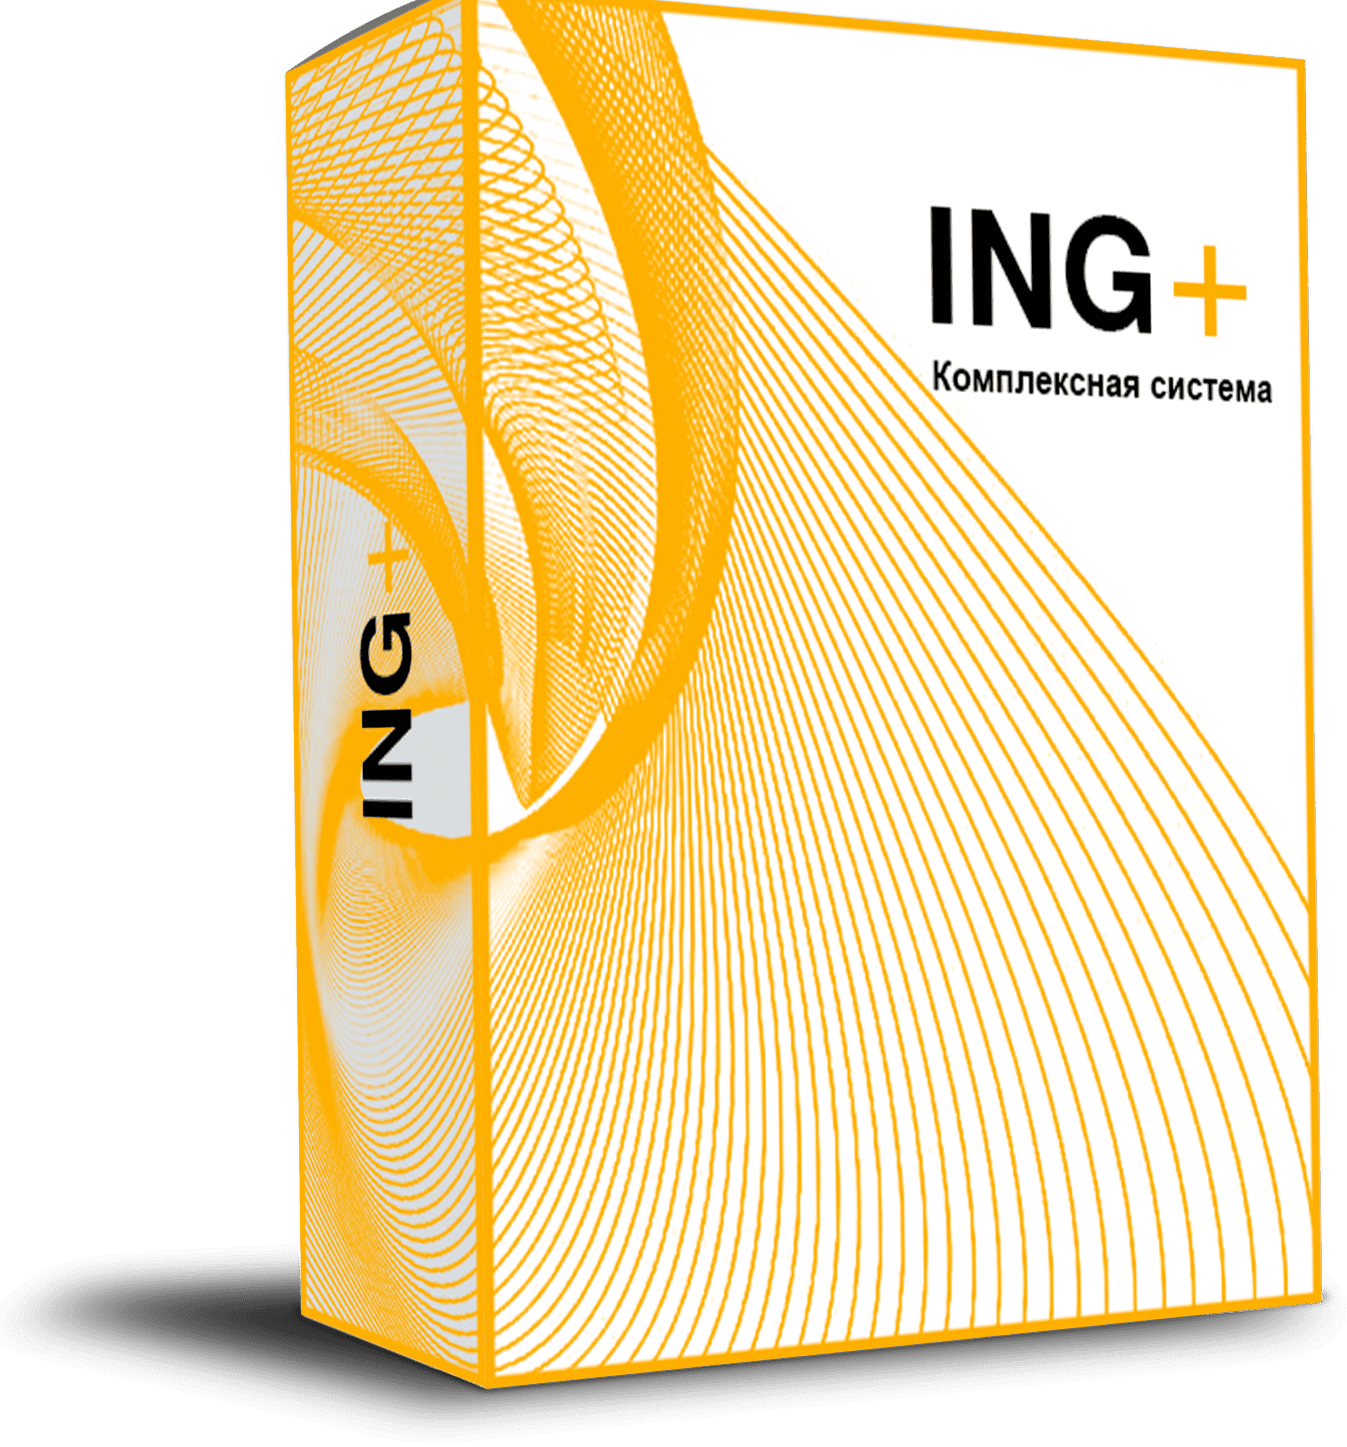 ING+-box